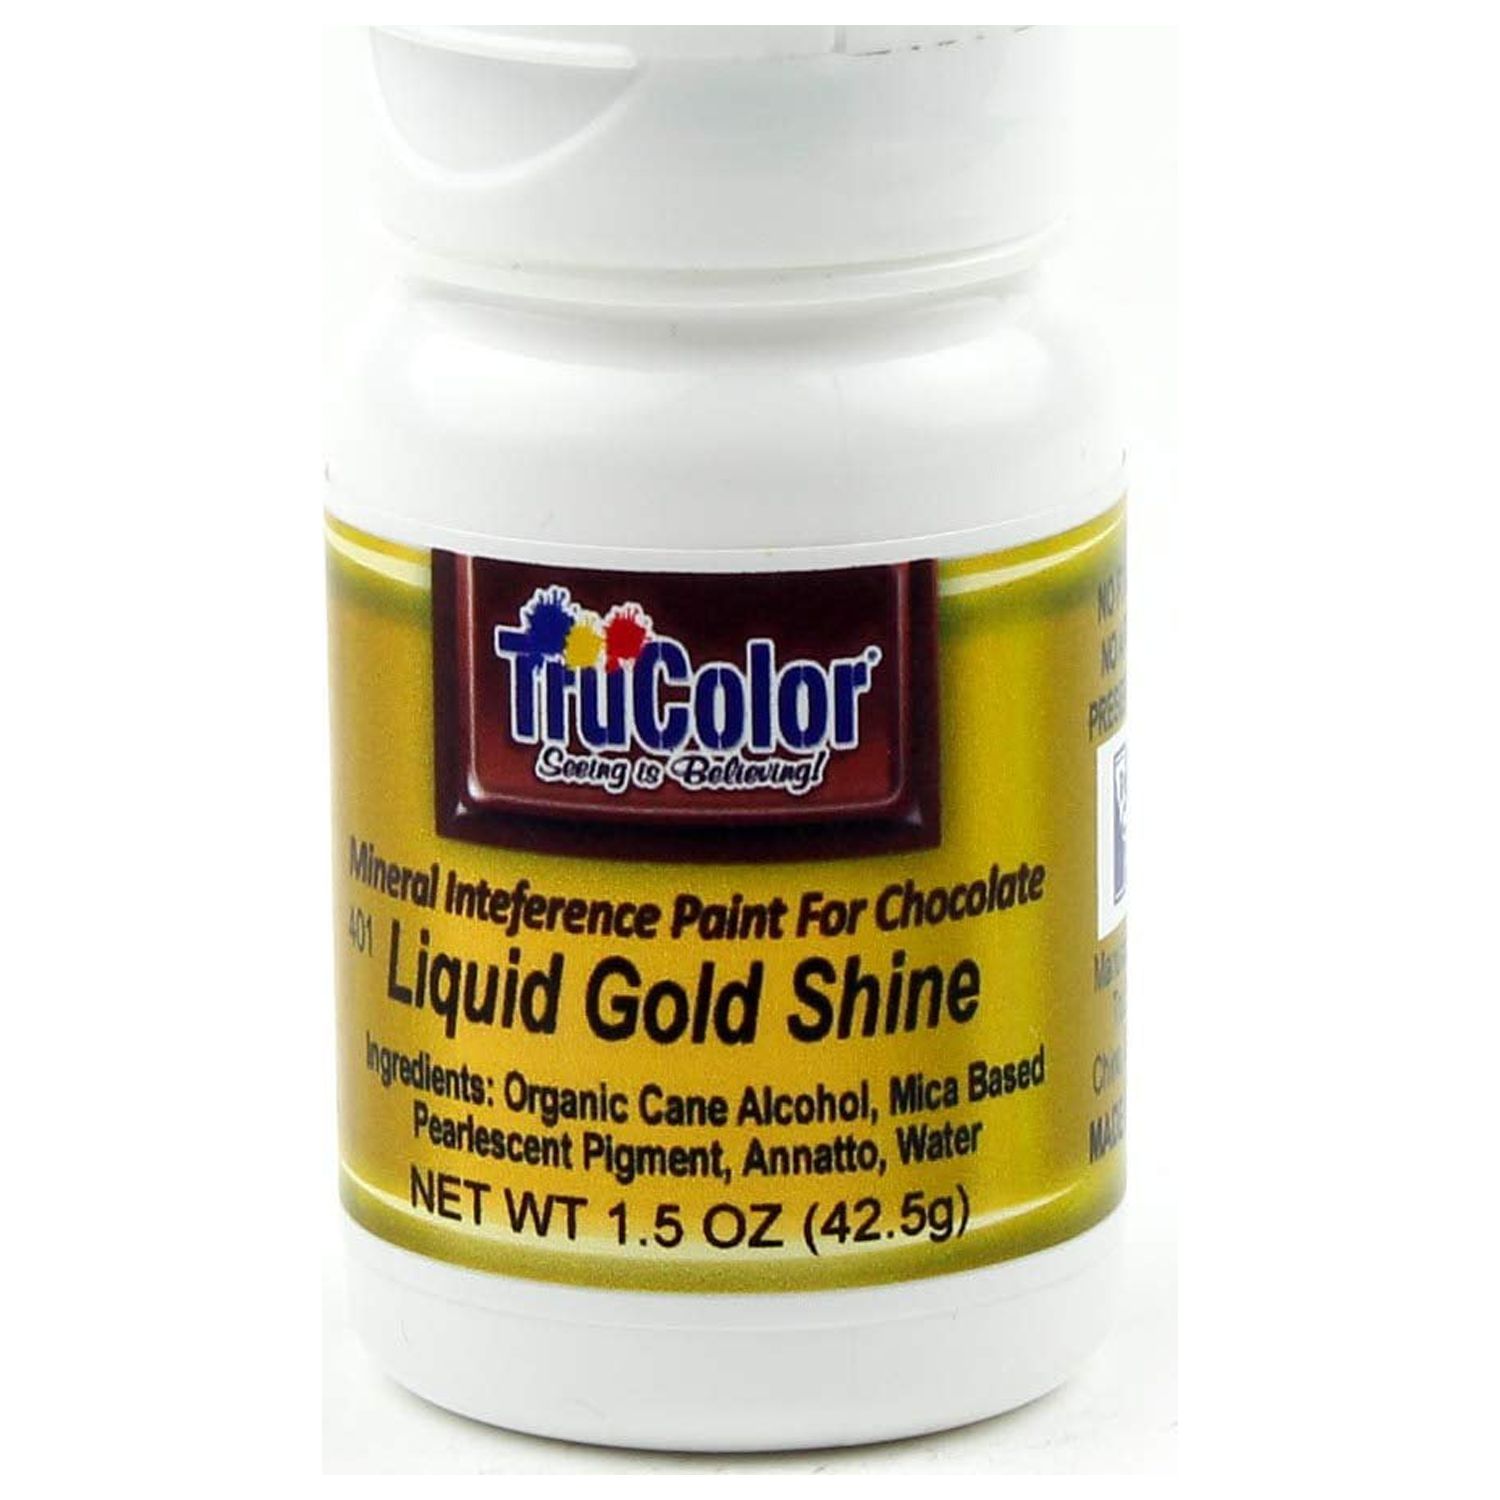 TruColor Liquid Shine 100-Percent-Natural Metallic Gold Food Color